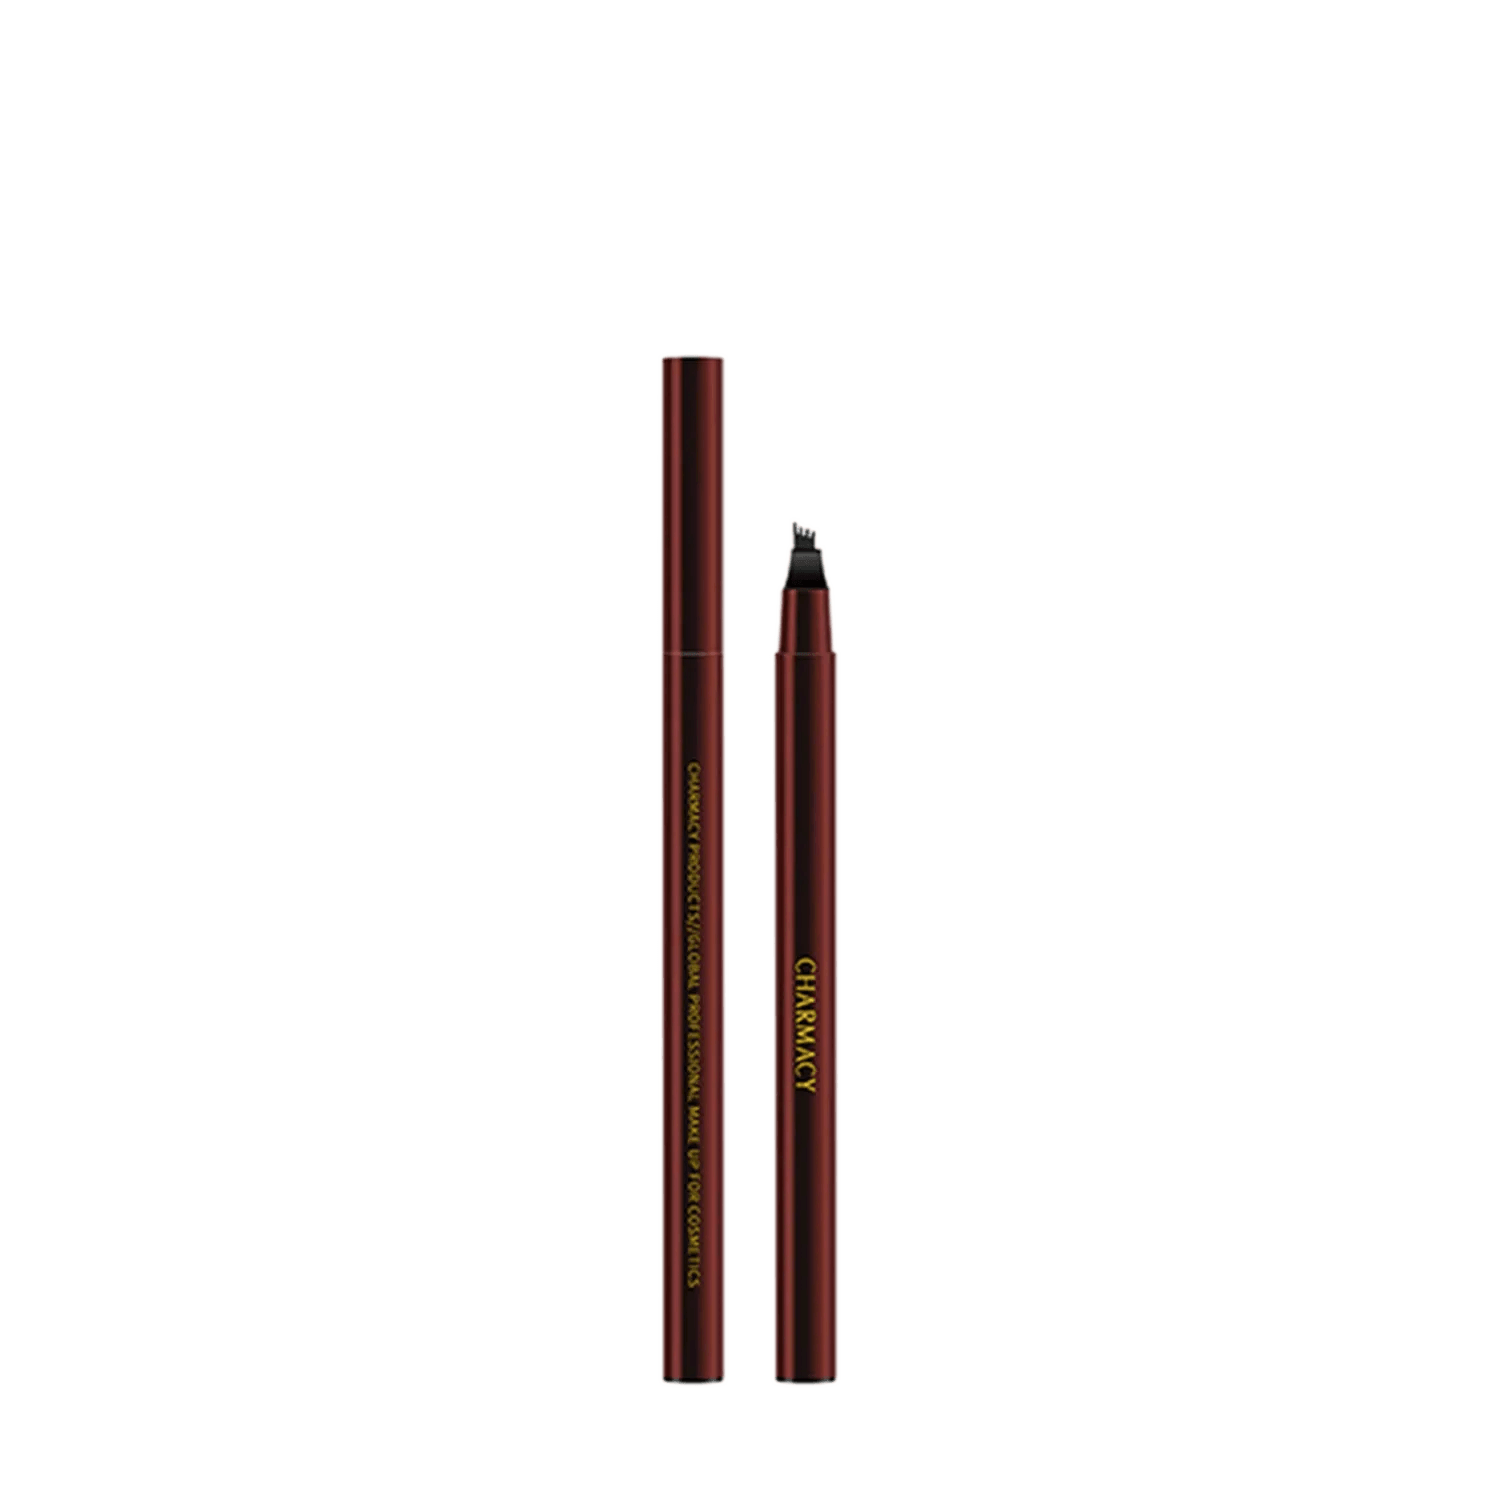 Charmacy Milano Ultra Thin Stroke Pen - Black No. 01 - (0.6ml)